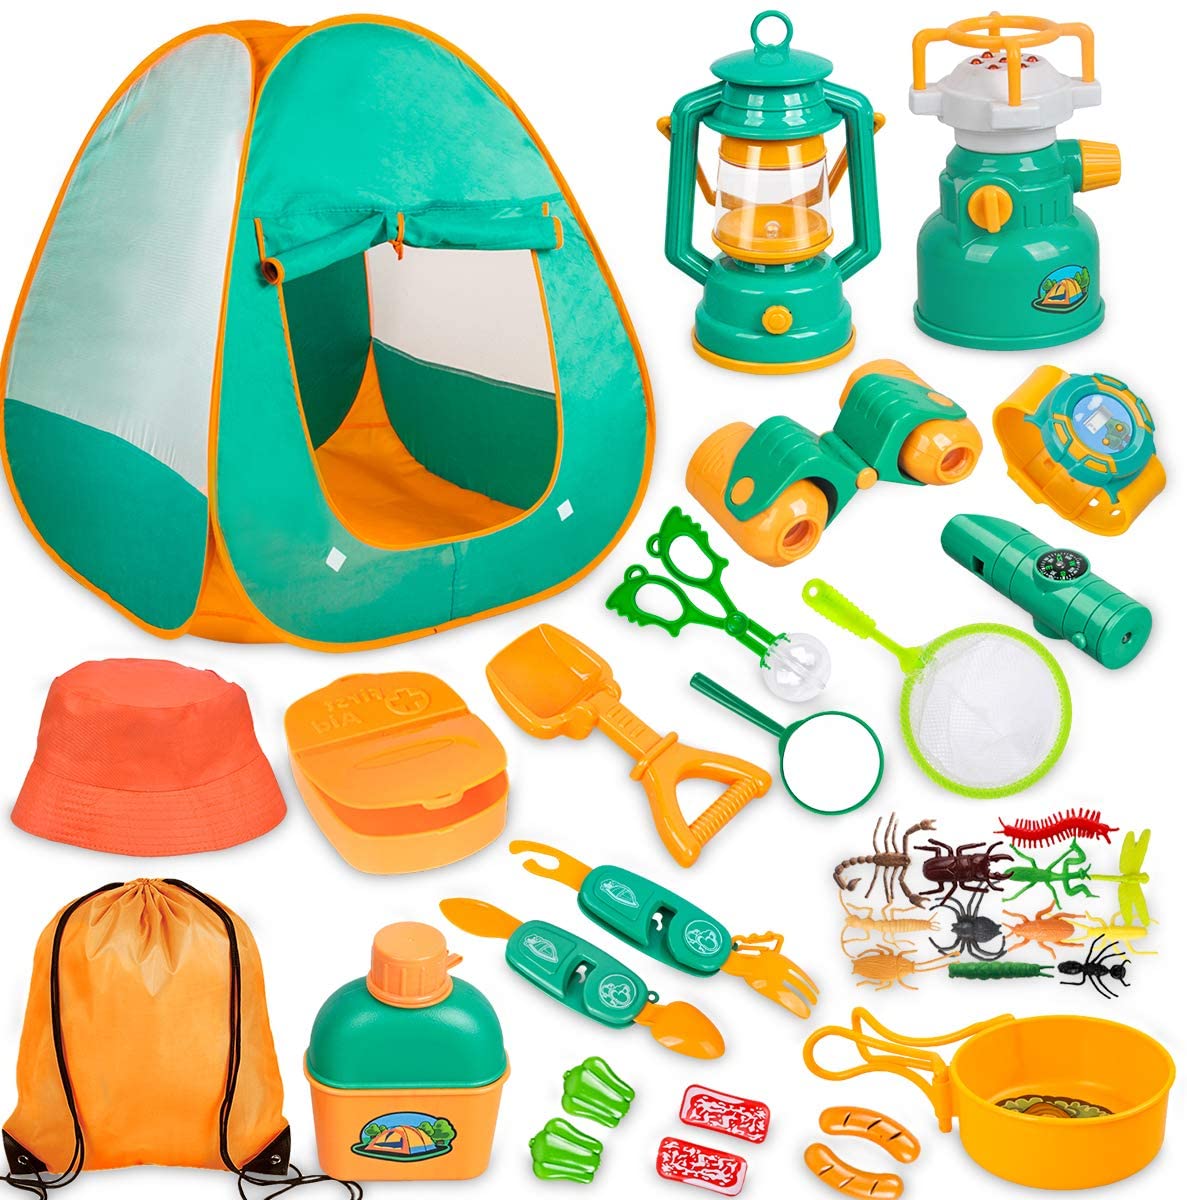 Meland Kids Outdoor Camping Gear Set, 24-Piece